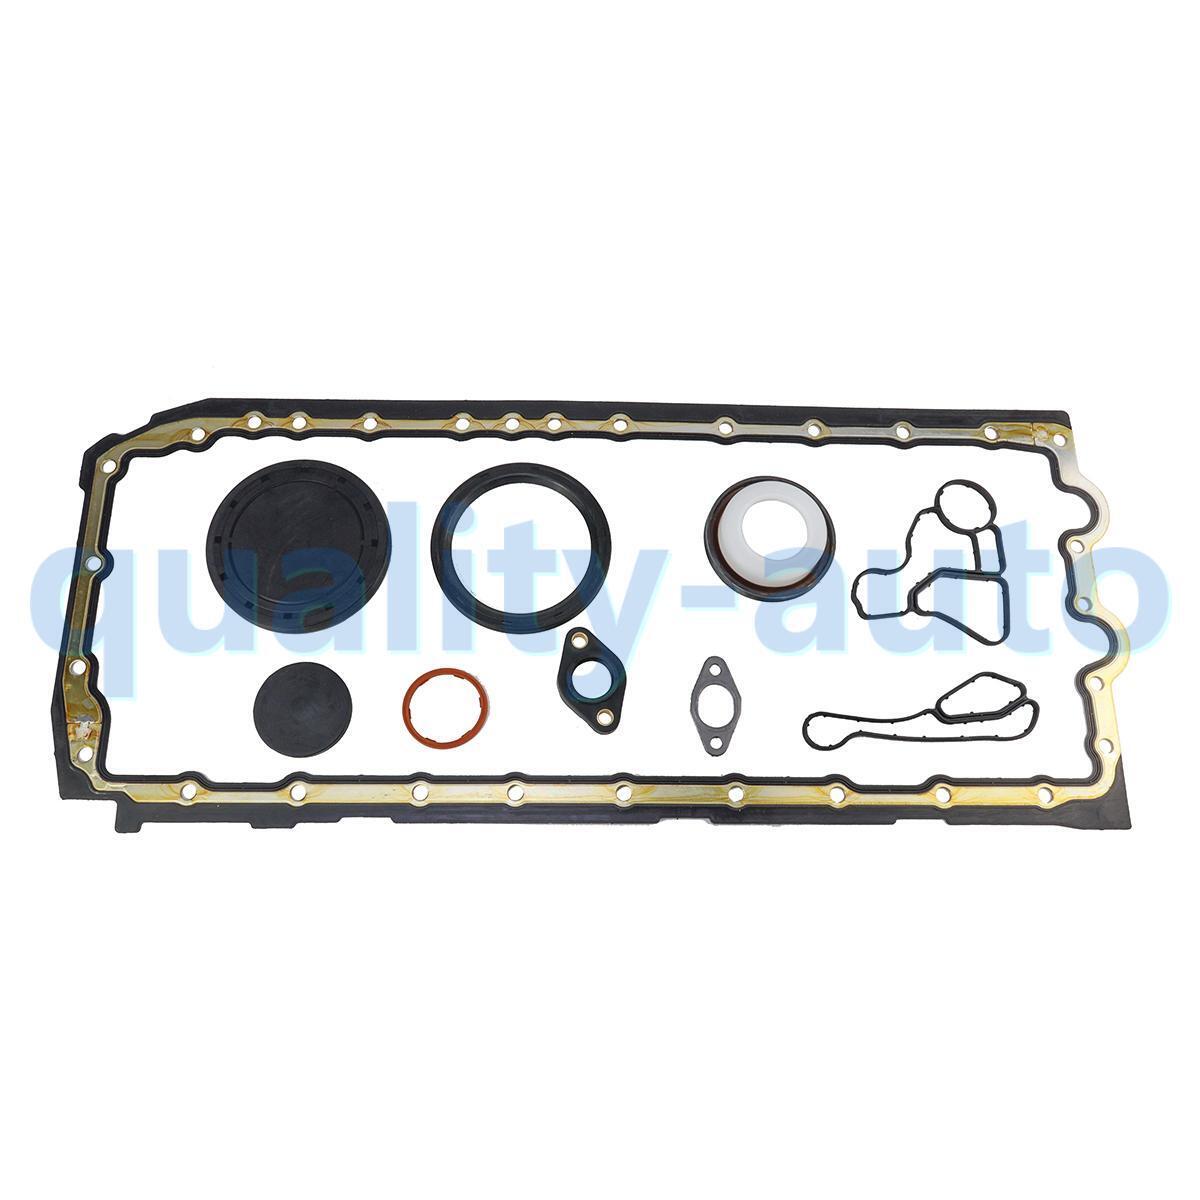 Oil Pan Gasket Set w/ Oil Cooler Seal for BMW M135i 335i 435i 535i X5 X6 N55 N54